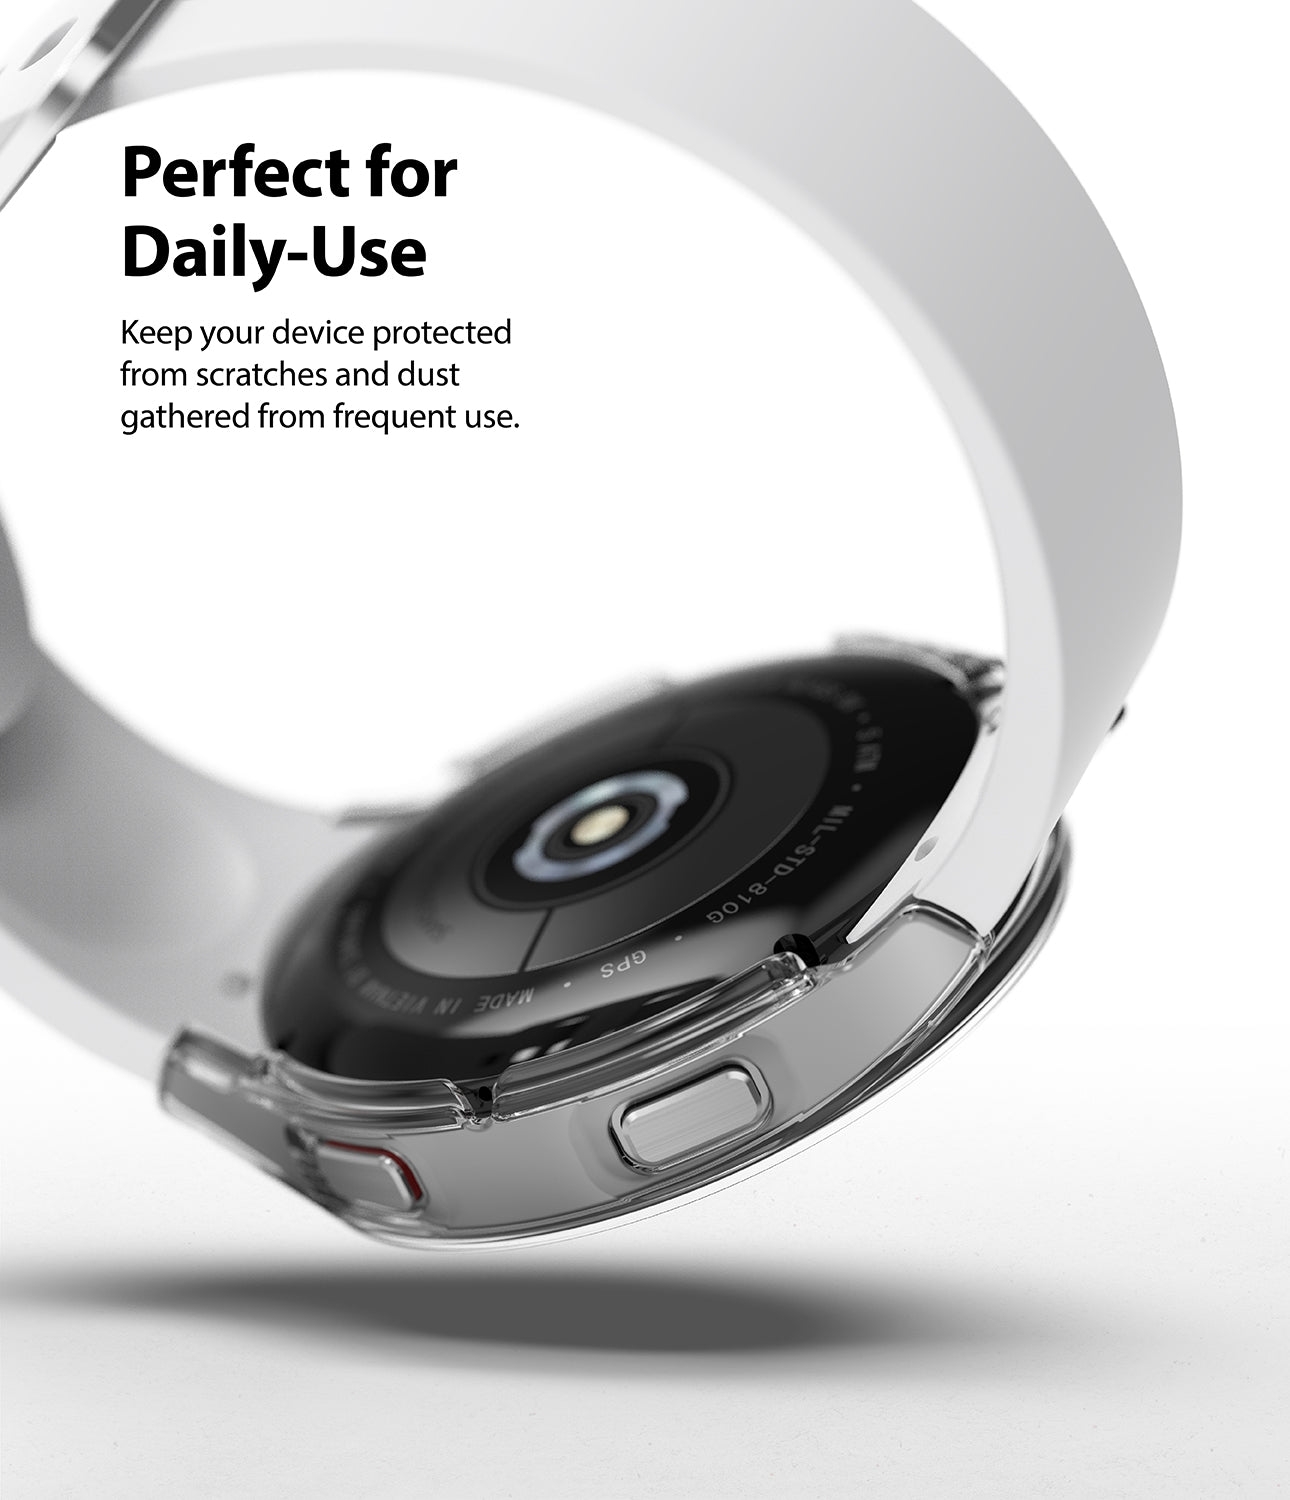 اطار ساعة سامسونج (كفر ساعة) 2 قطعة 40 ملم - شفاف و كروم Ringke Slim Case Samsung Galaxy Watch 4